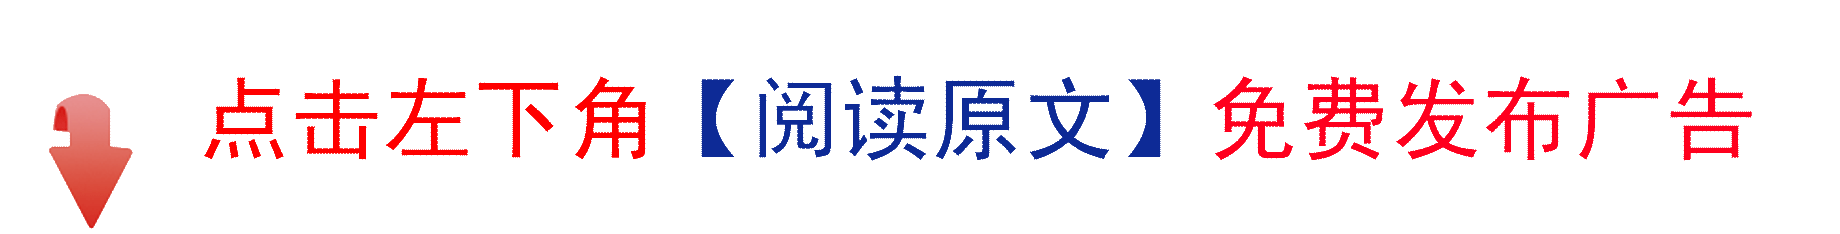 固阳县卫生和计划生育局 公示离职助理员生活补助名单